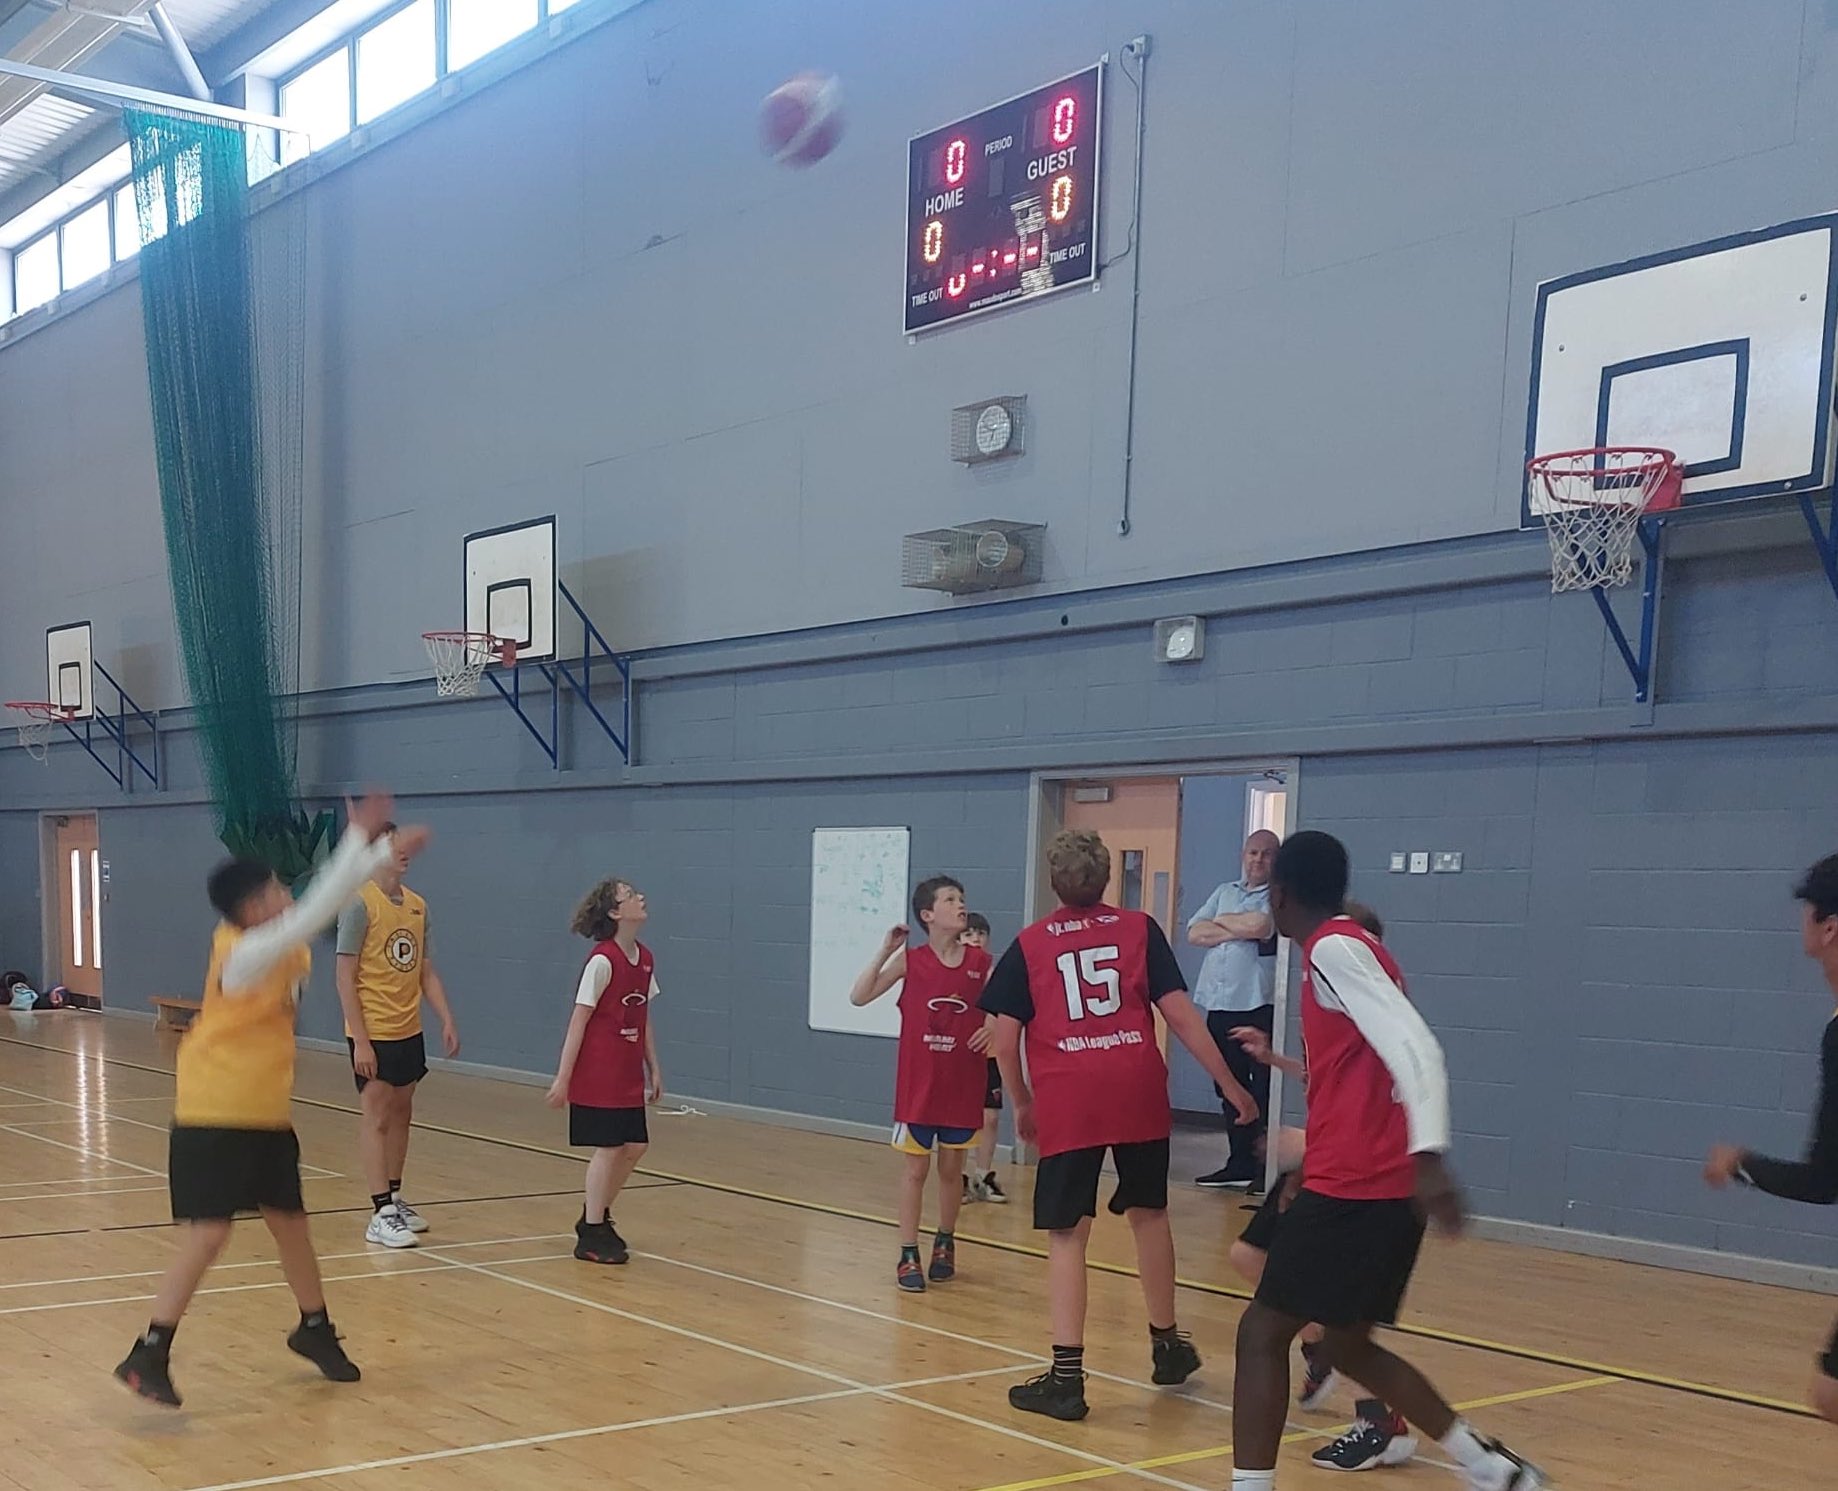 Glasgow Rens Basketball Club